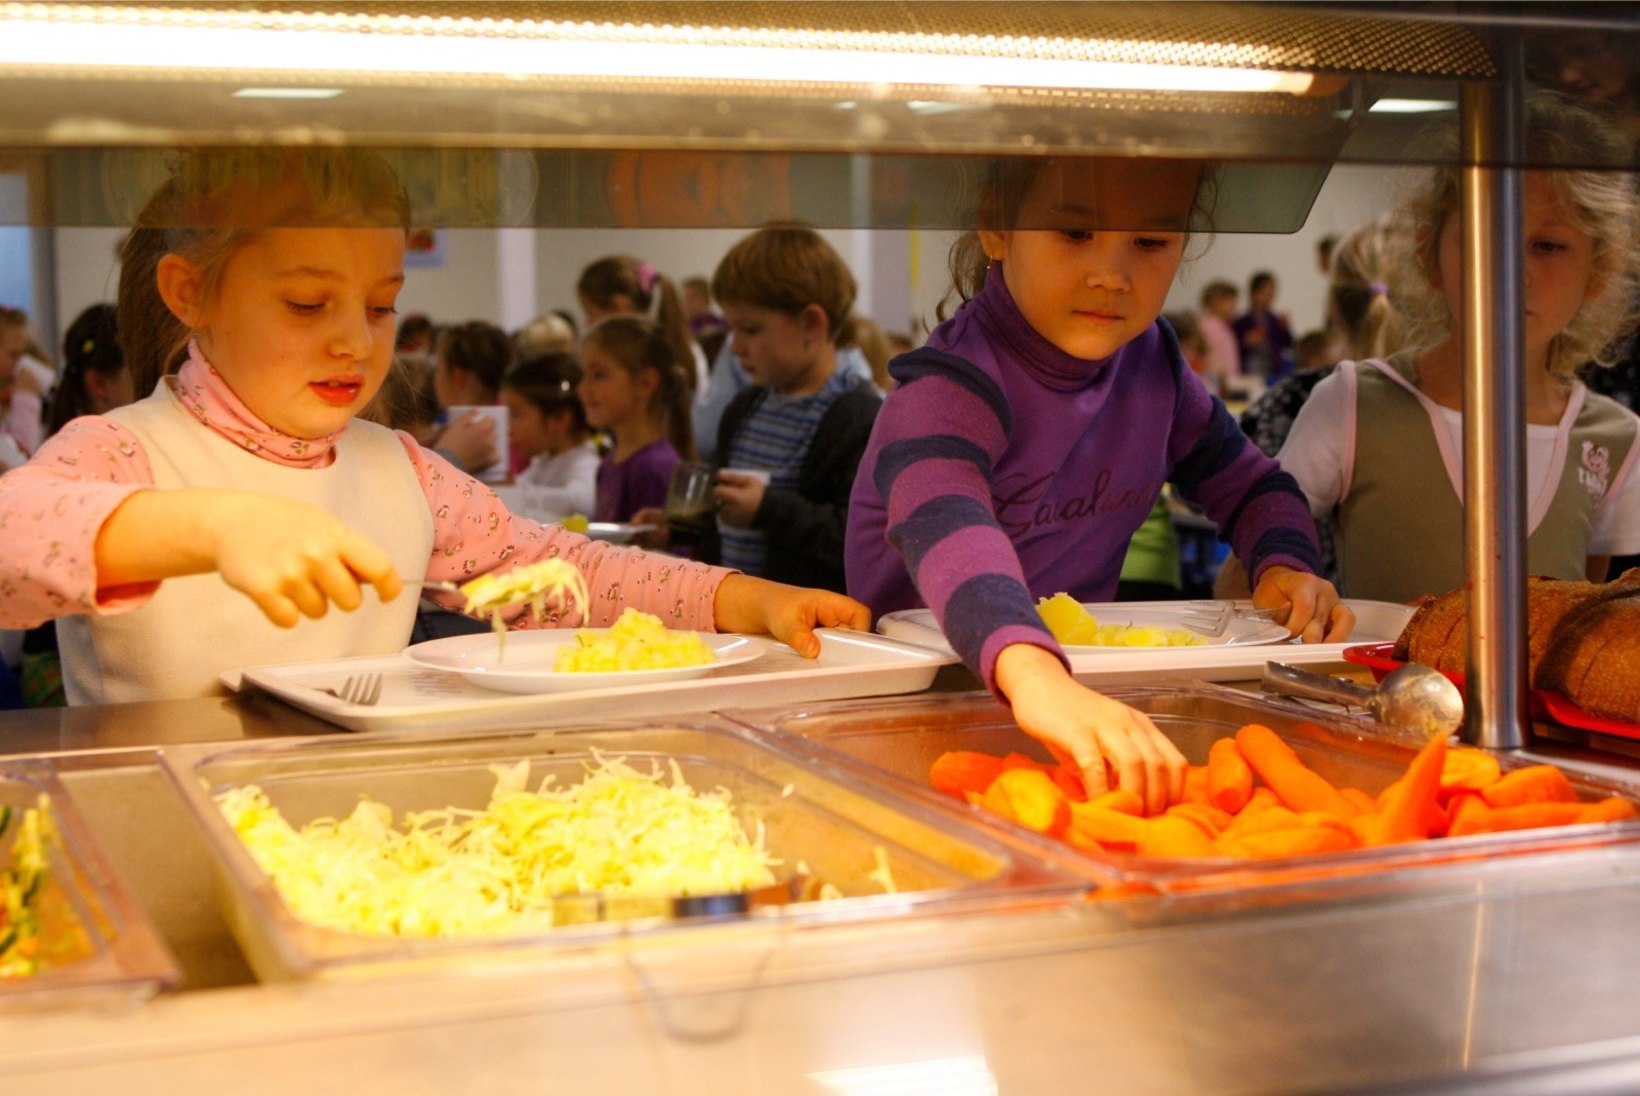 Haridusasutused saavad laste toitumisalaste valikute kujunemisel palju ära teha